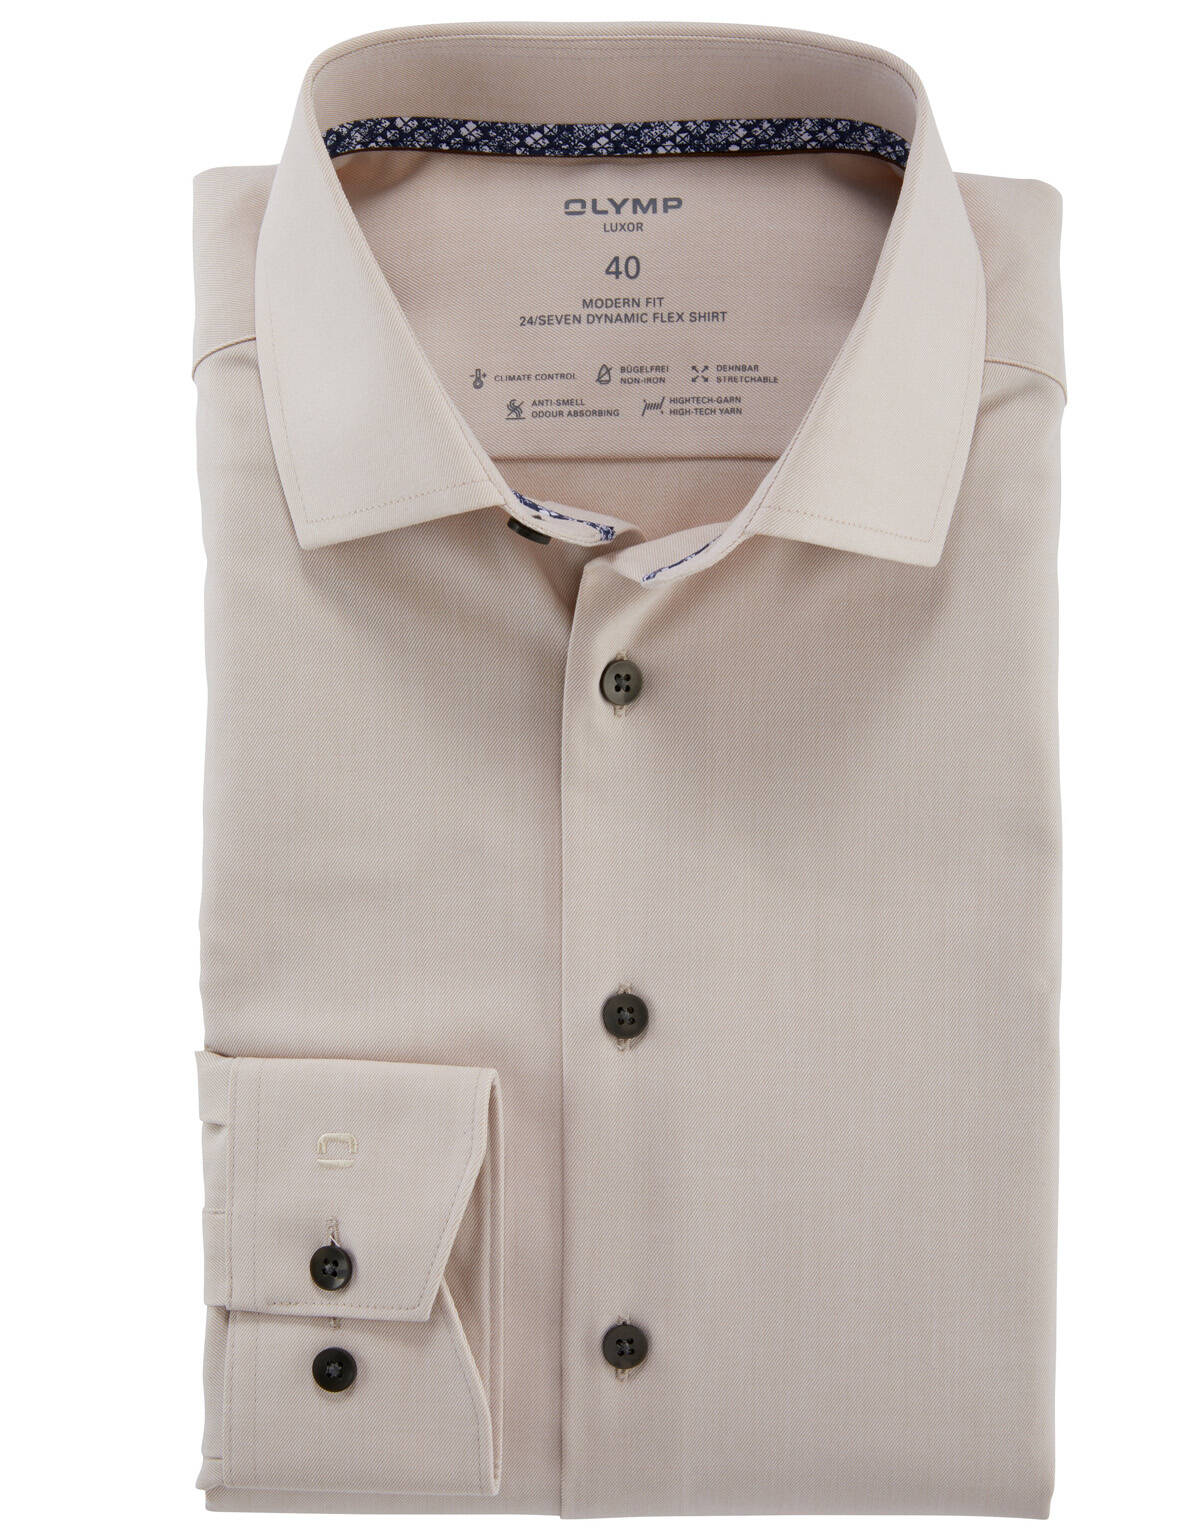 Рубашка мужская OLYMP Luxor 24/7, modern fit[Бежевый]